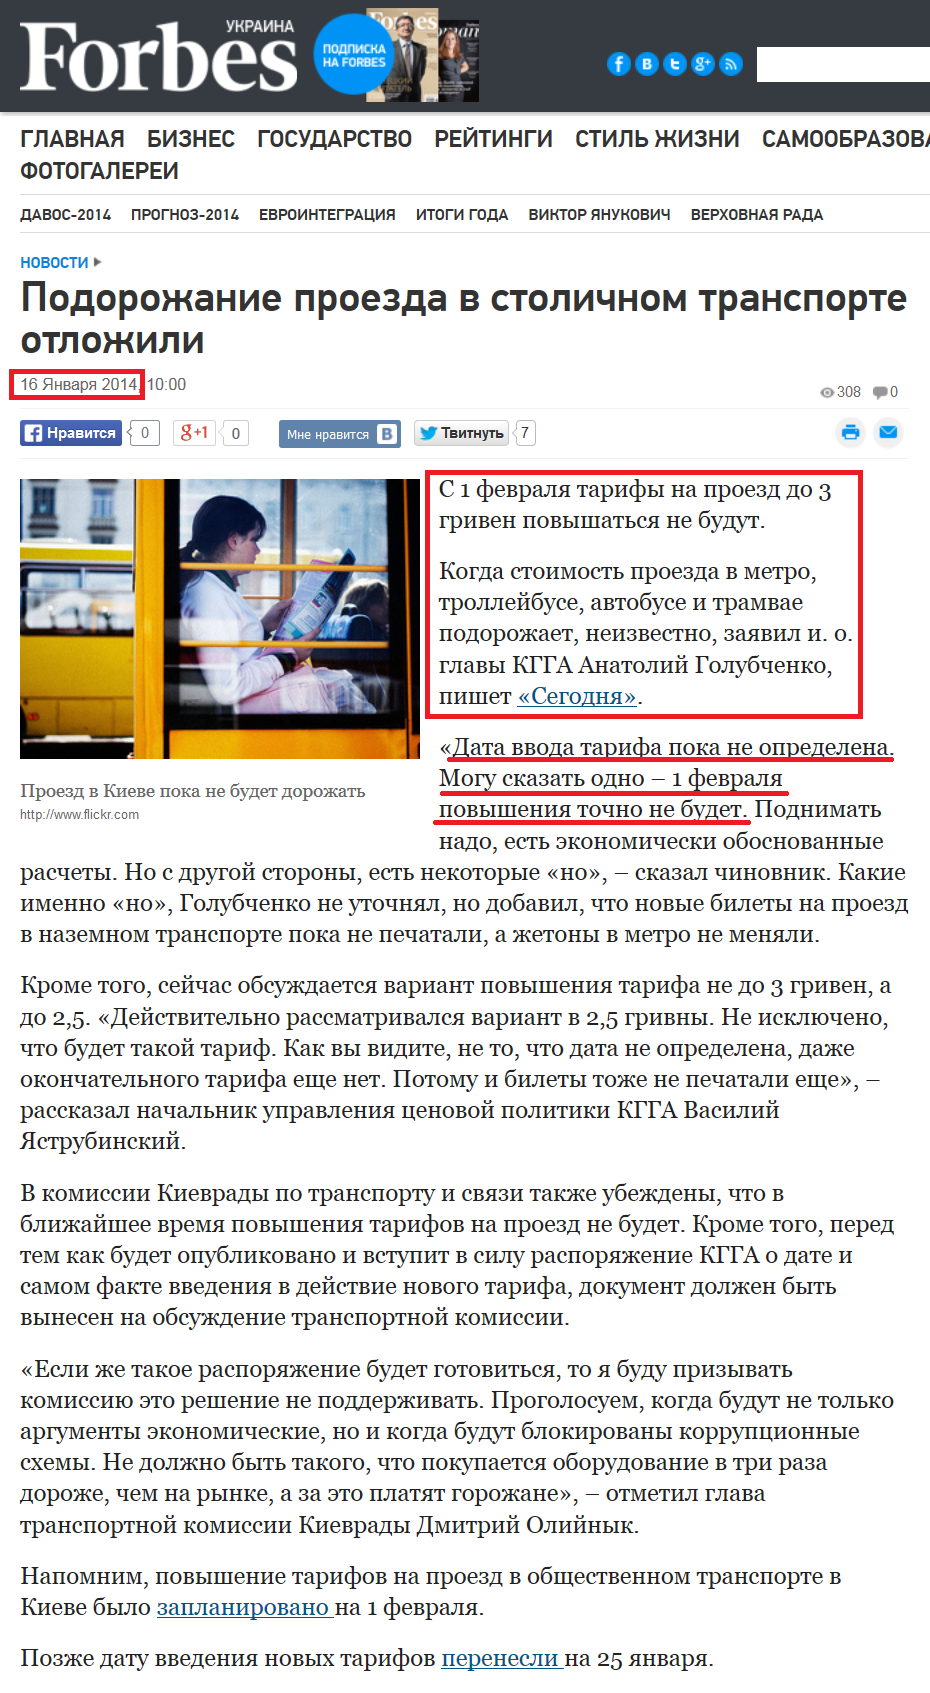 http://forbes.ua/news/1363454-podorozhanie-proezda-v-stolichnom-transporte-otlozhili